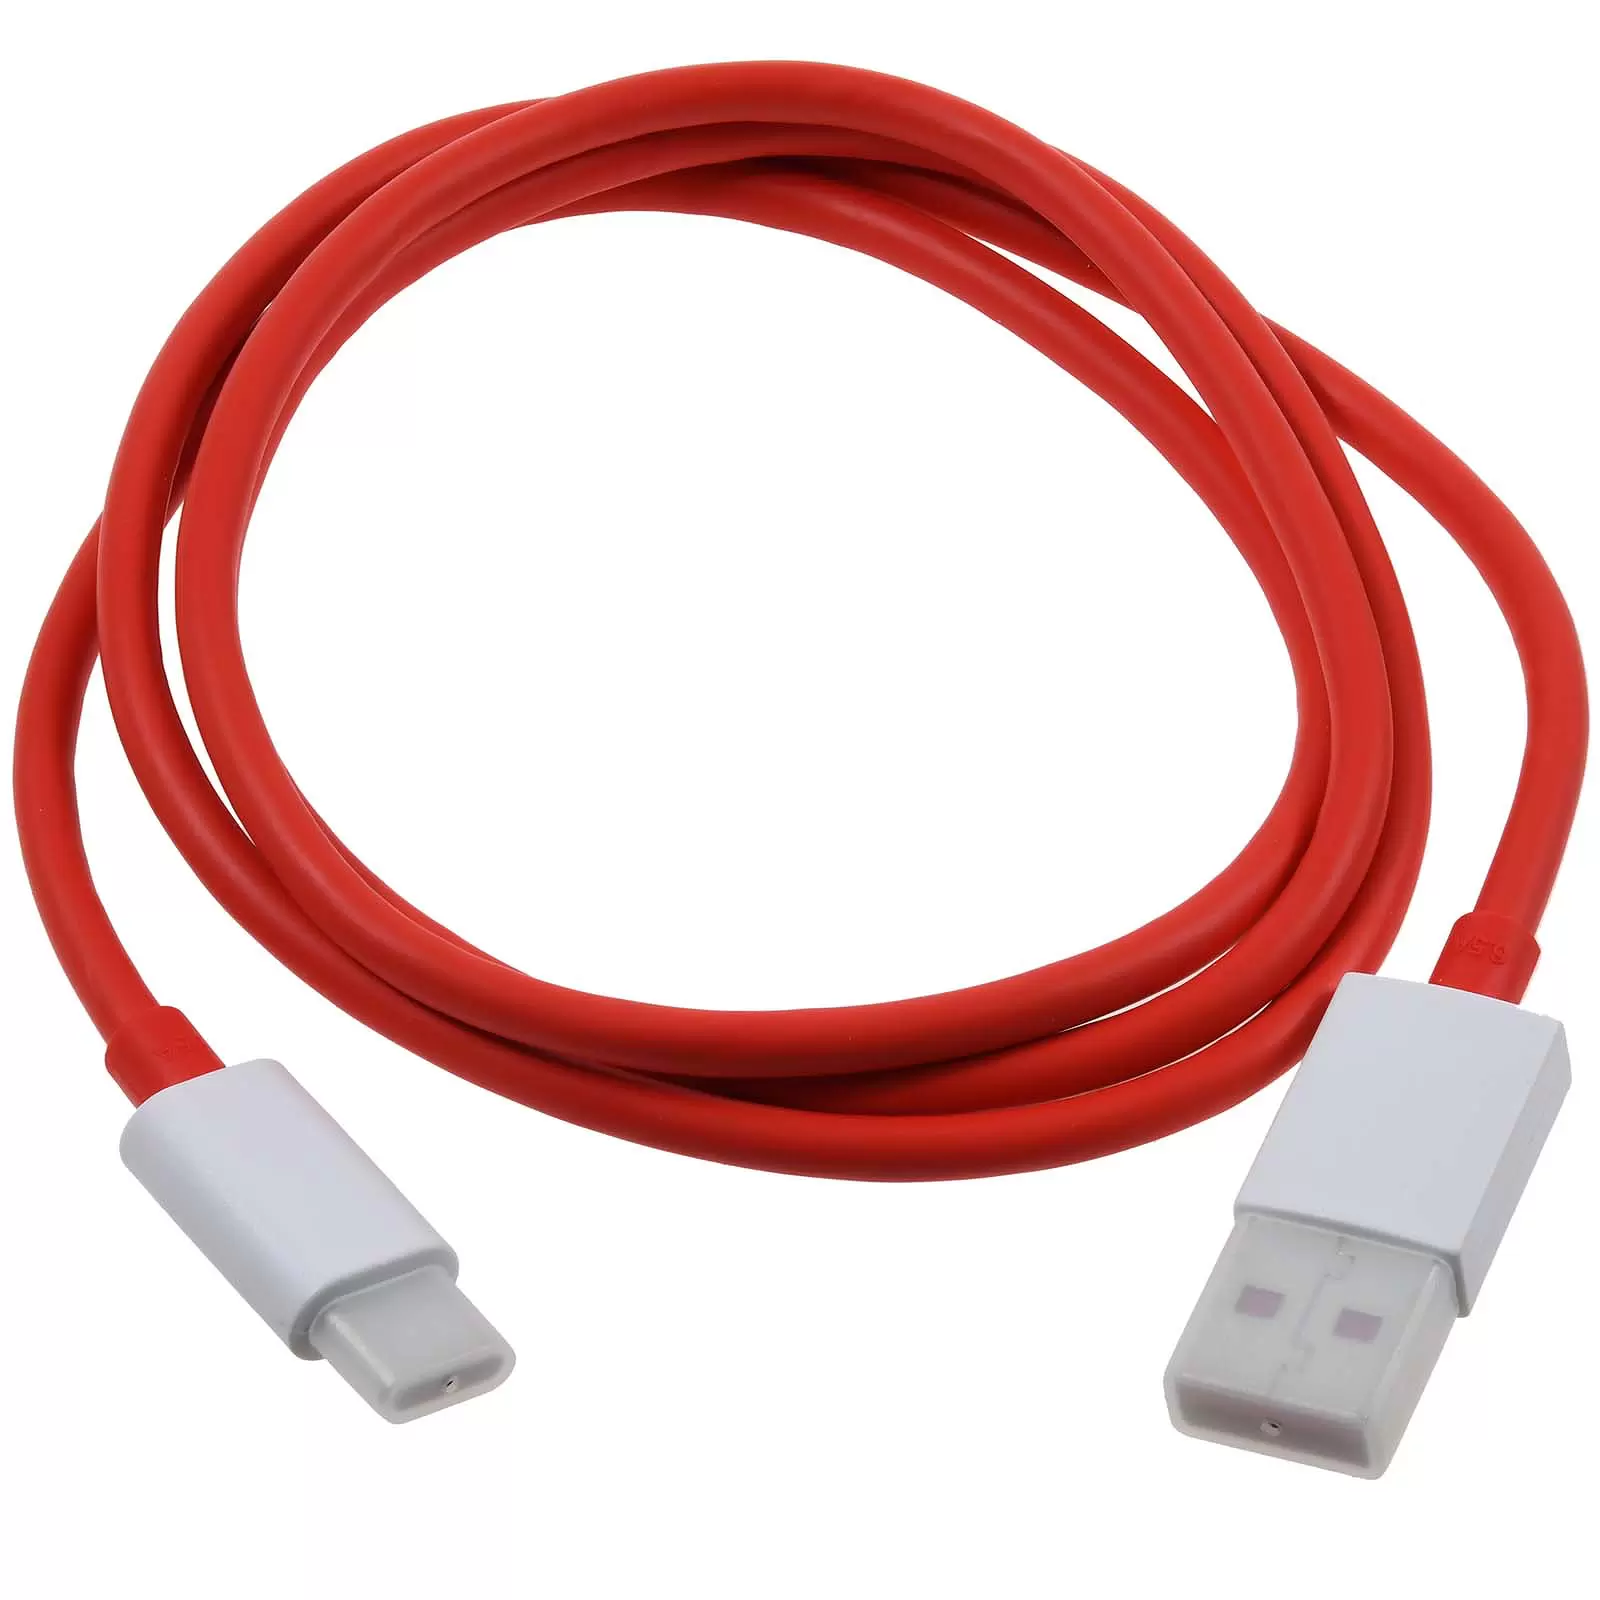 OnePlus Dash D301 Schnellladekabel Datenkabel USB-A auf USB-C 1m rot